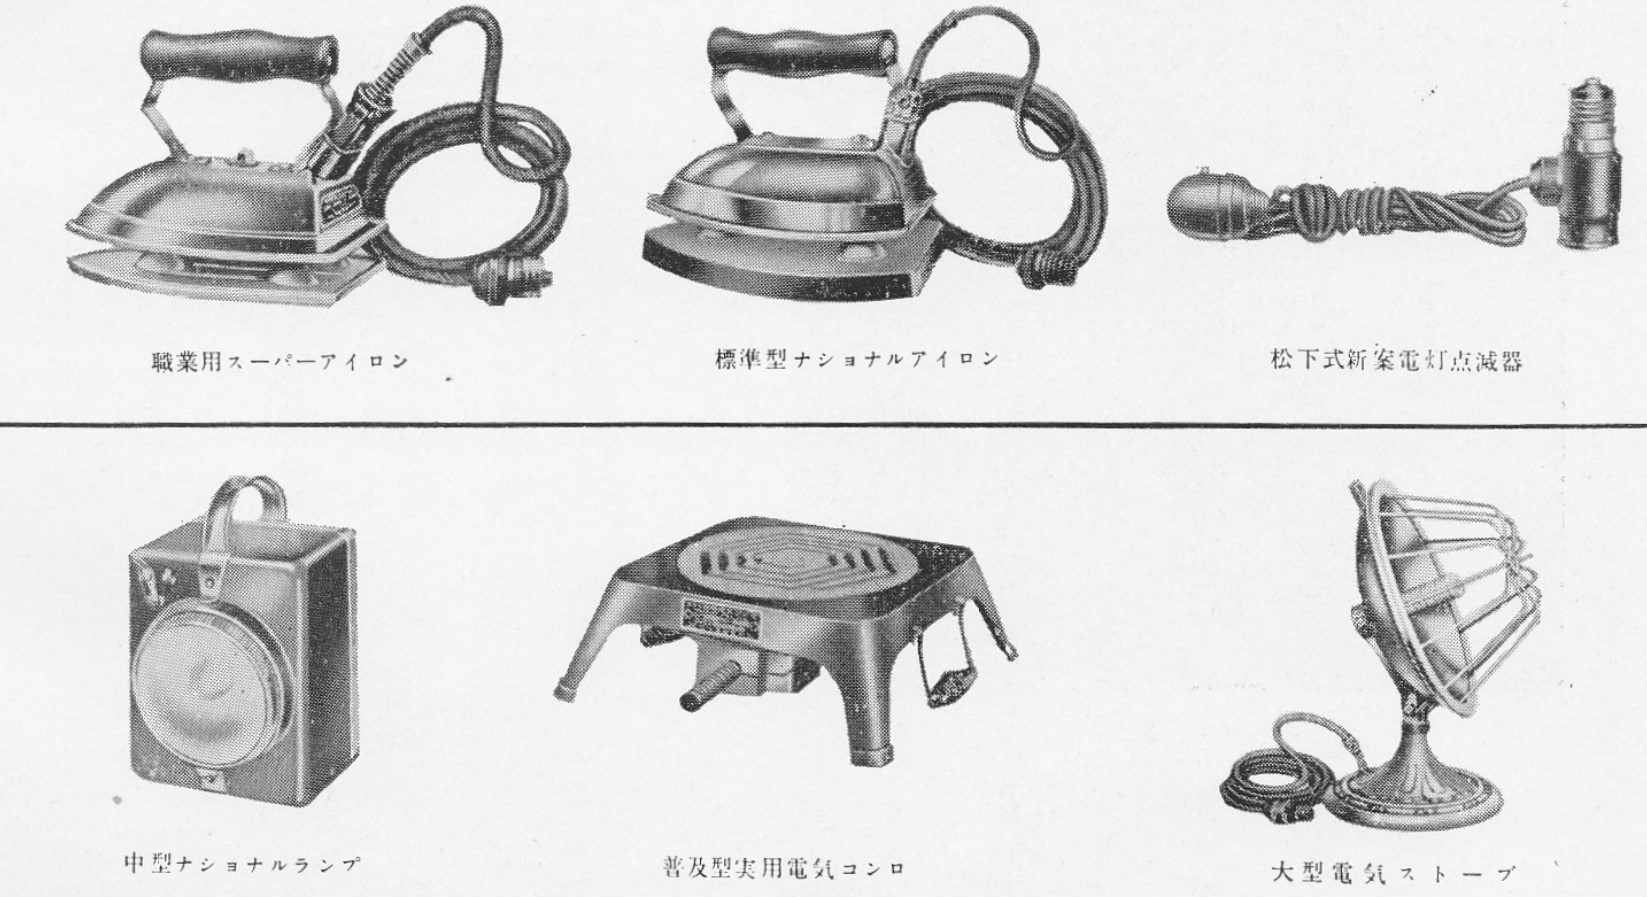 Непростая история японского чуда и радиоприёмник на микросхеме Sanyo - 8